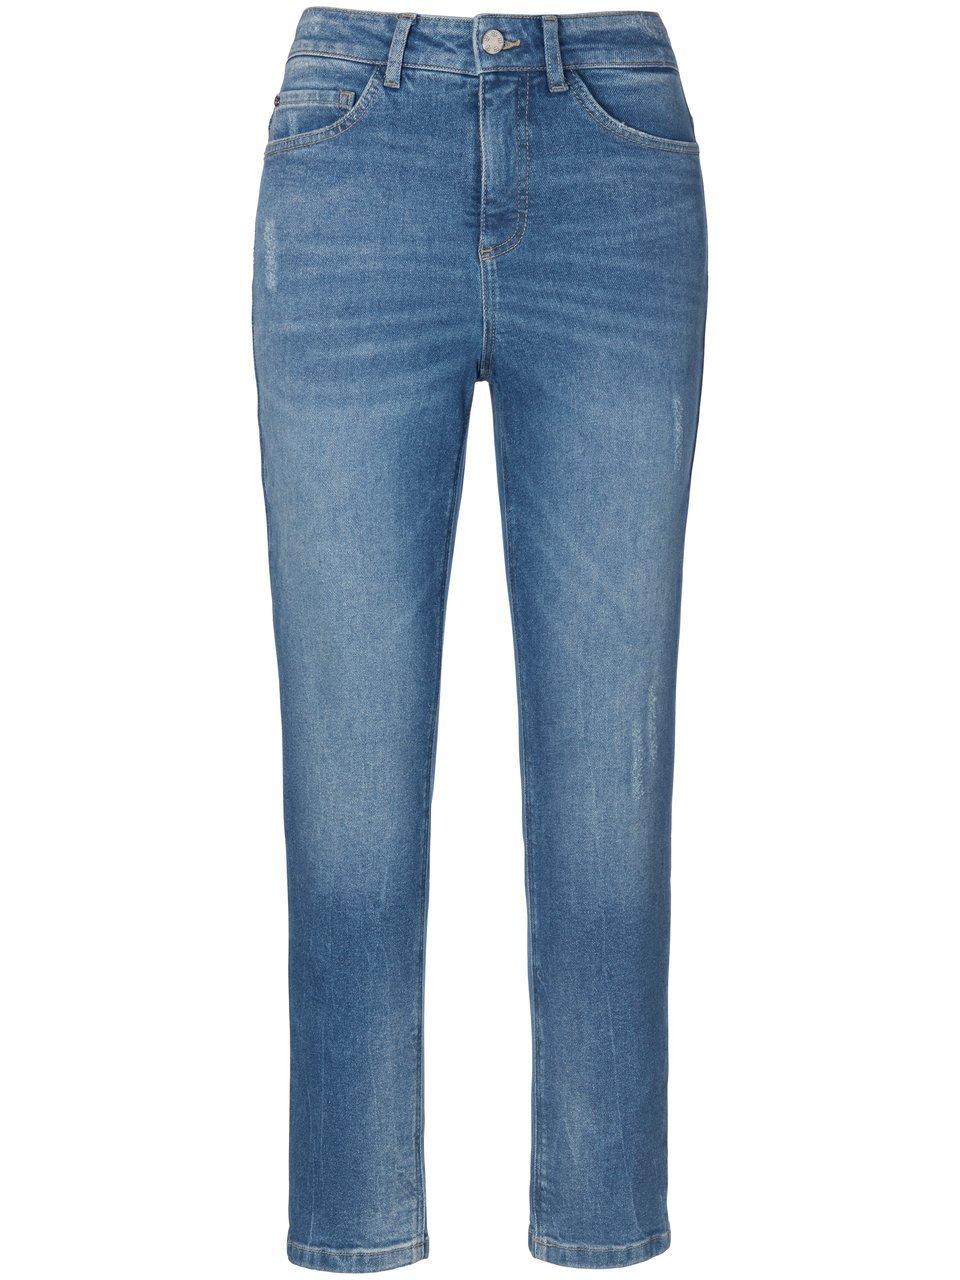 Enkellange jeans in smal model Van BASLER denim